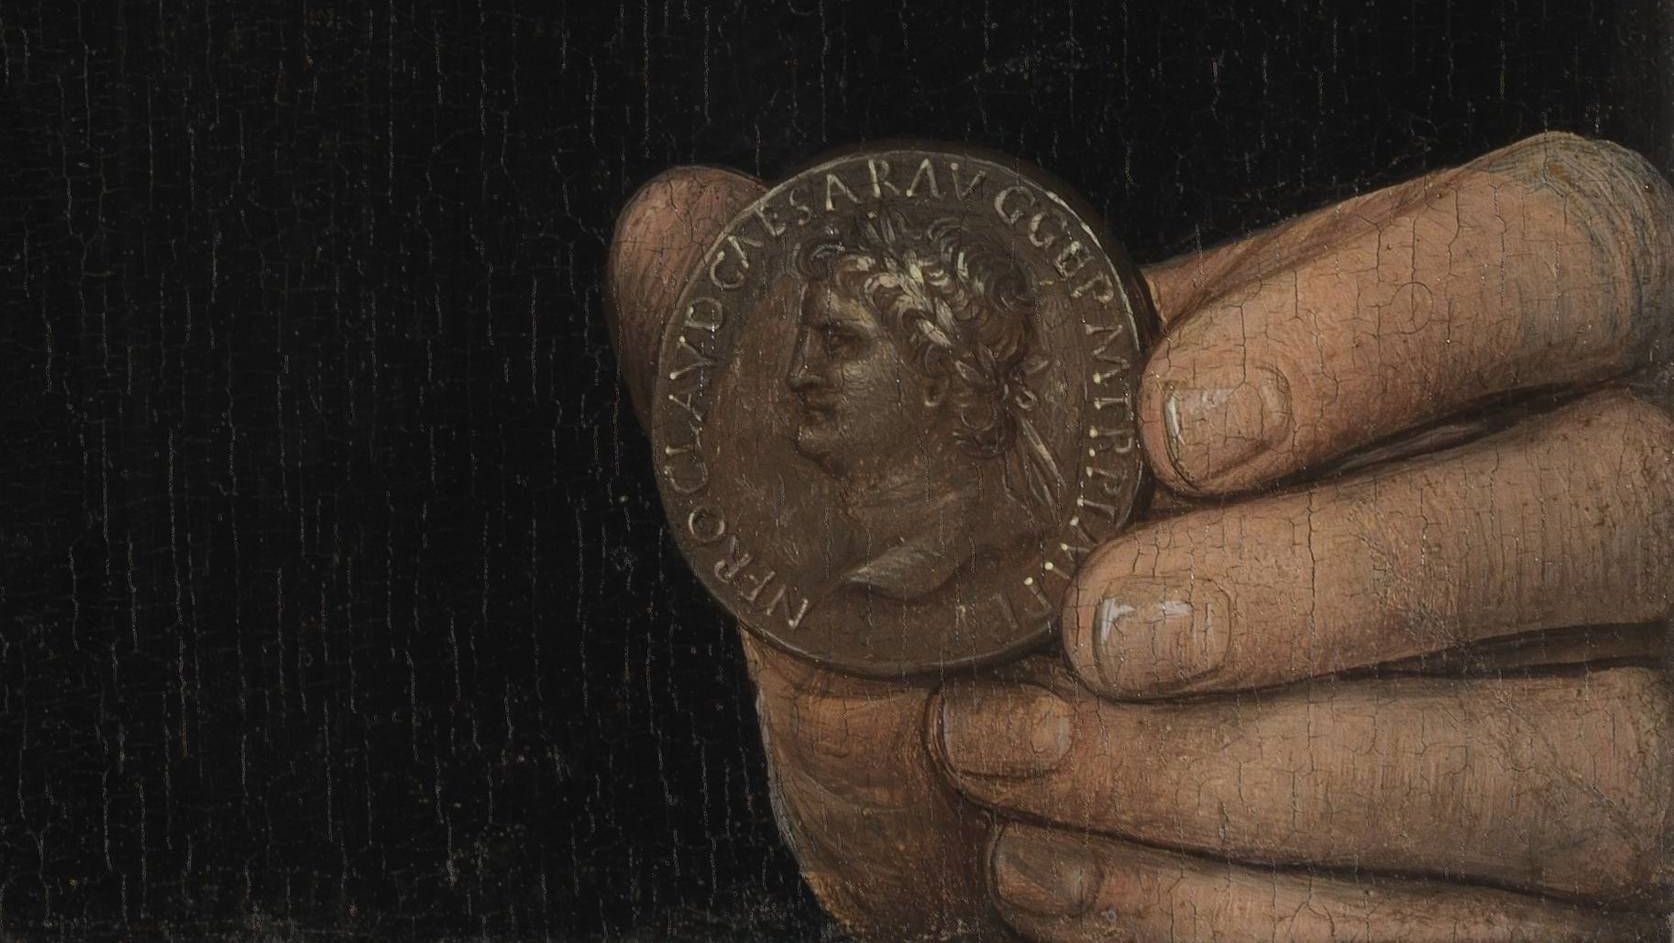 Ганс Мемлинг. Портрет мужчины с монетой императора Нерона (Бернардо Бембо) - фрагмент. До 1480